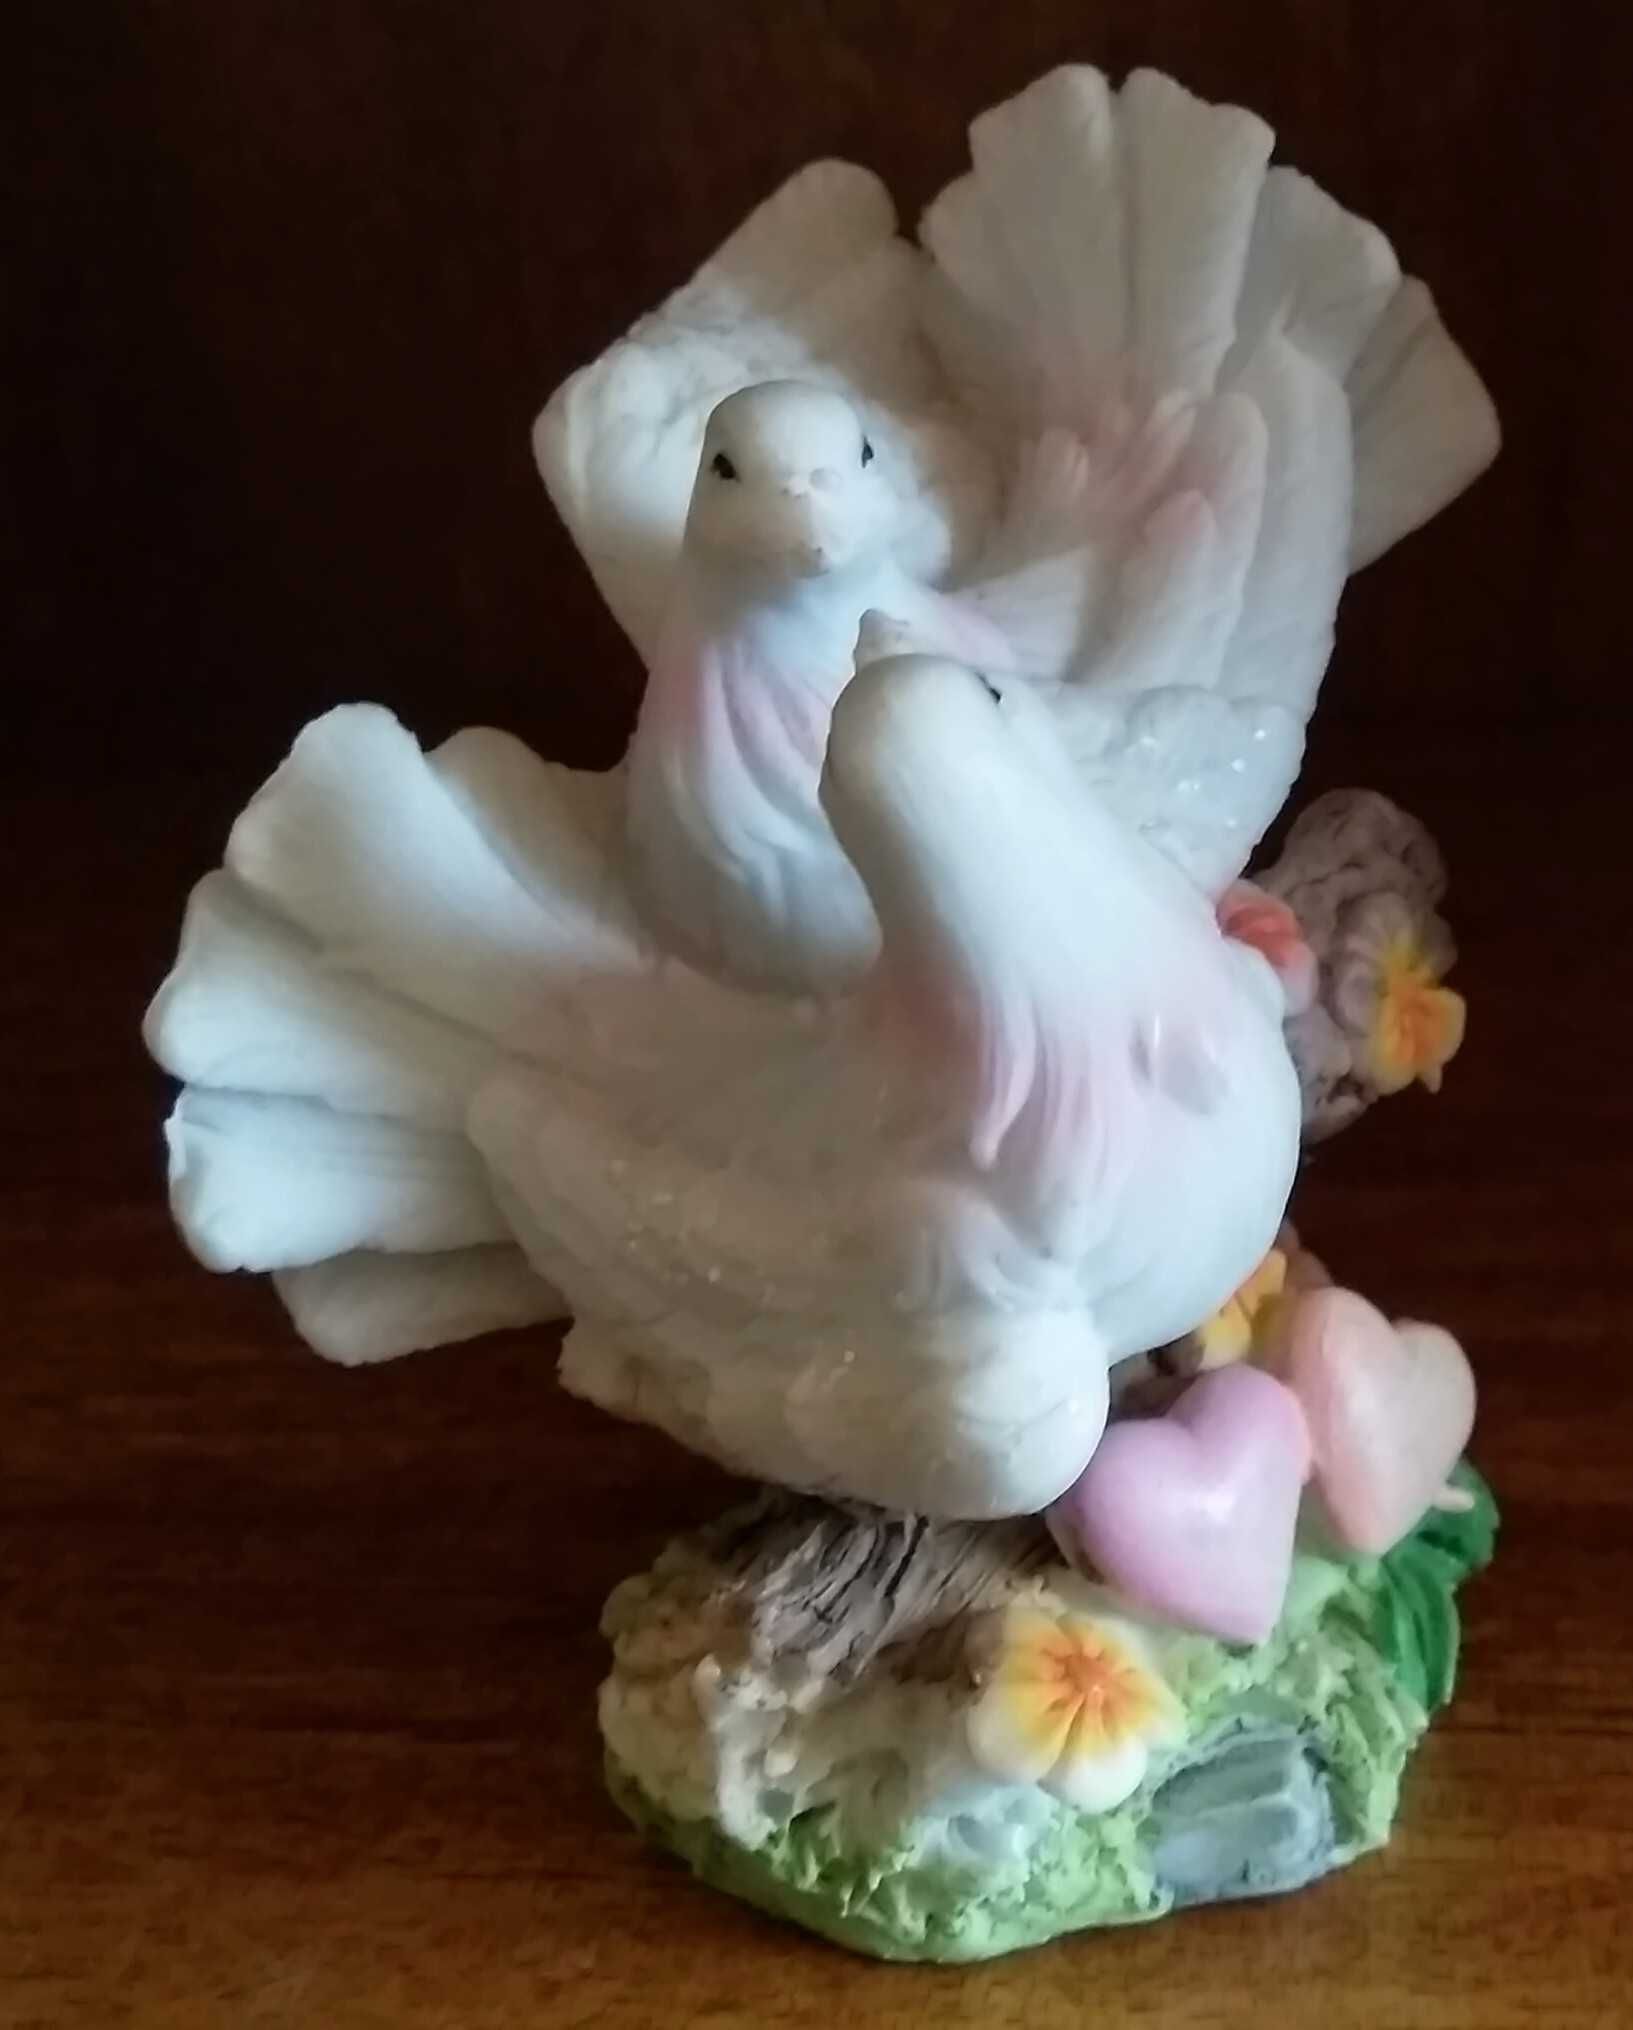 Статуэтка "Влюбленная парочка белых голубей" для коллекции